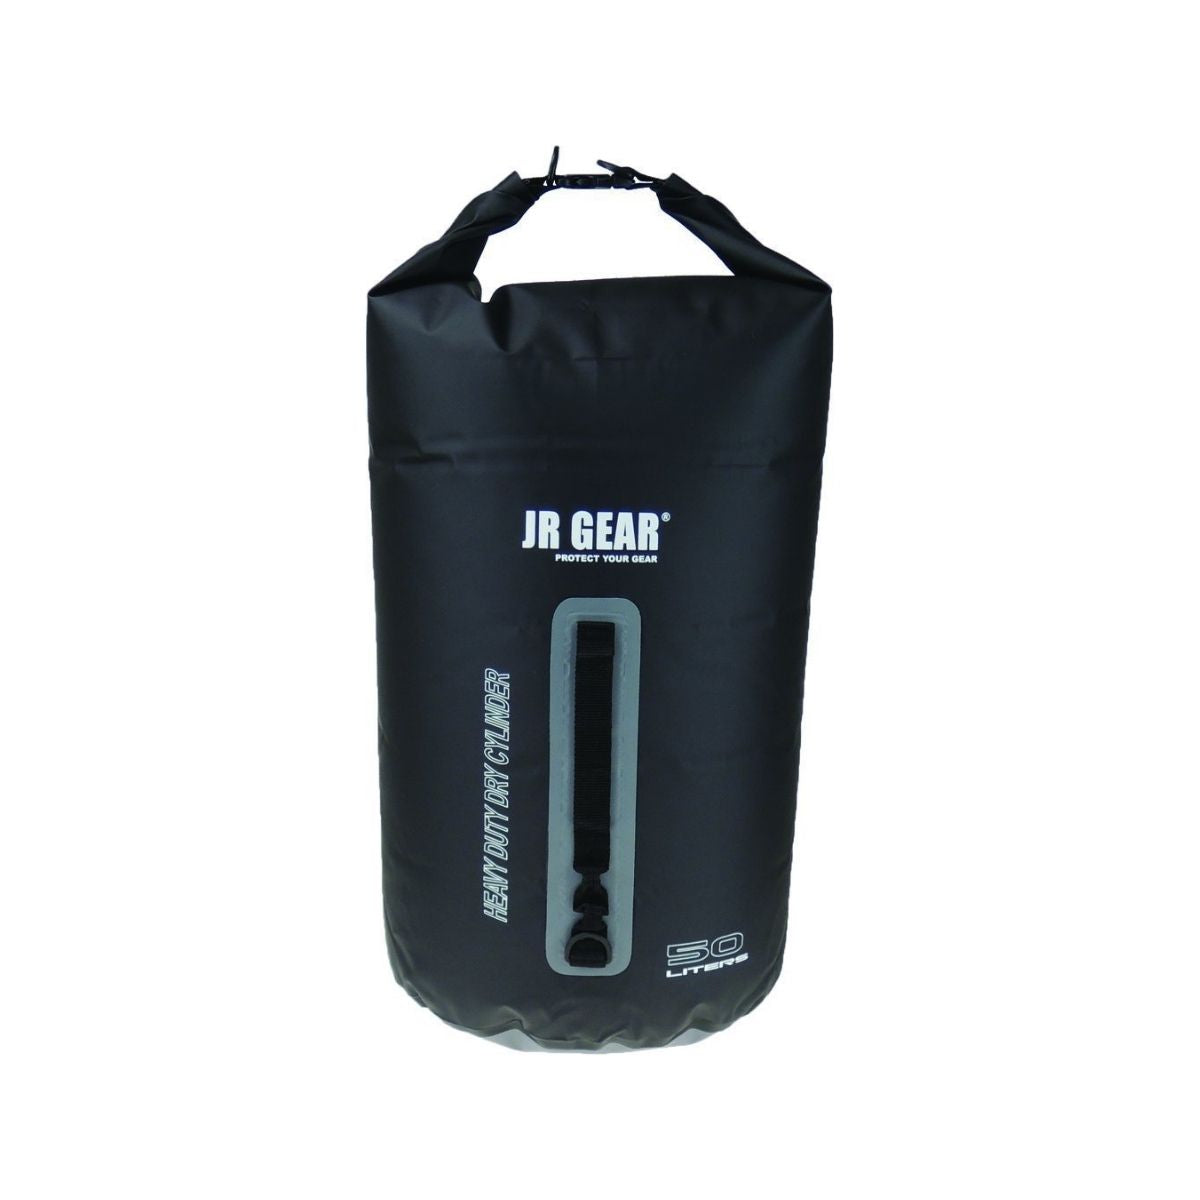 JR Gear: Heavy Duty Dry Bag - Outdoor Travel Gear 2